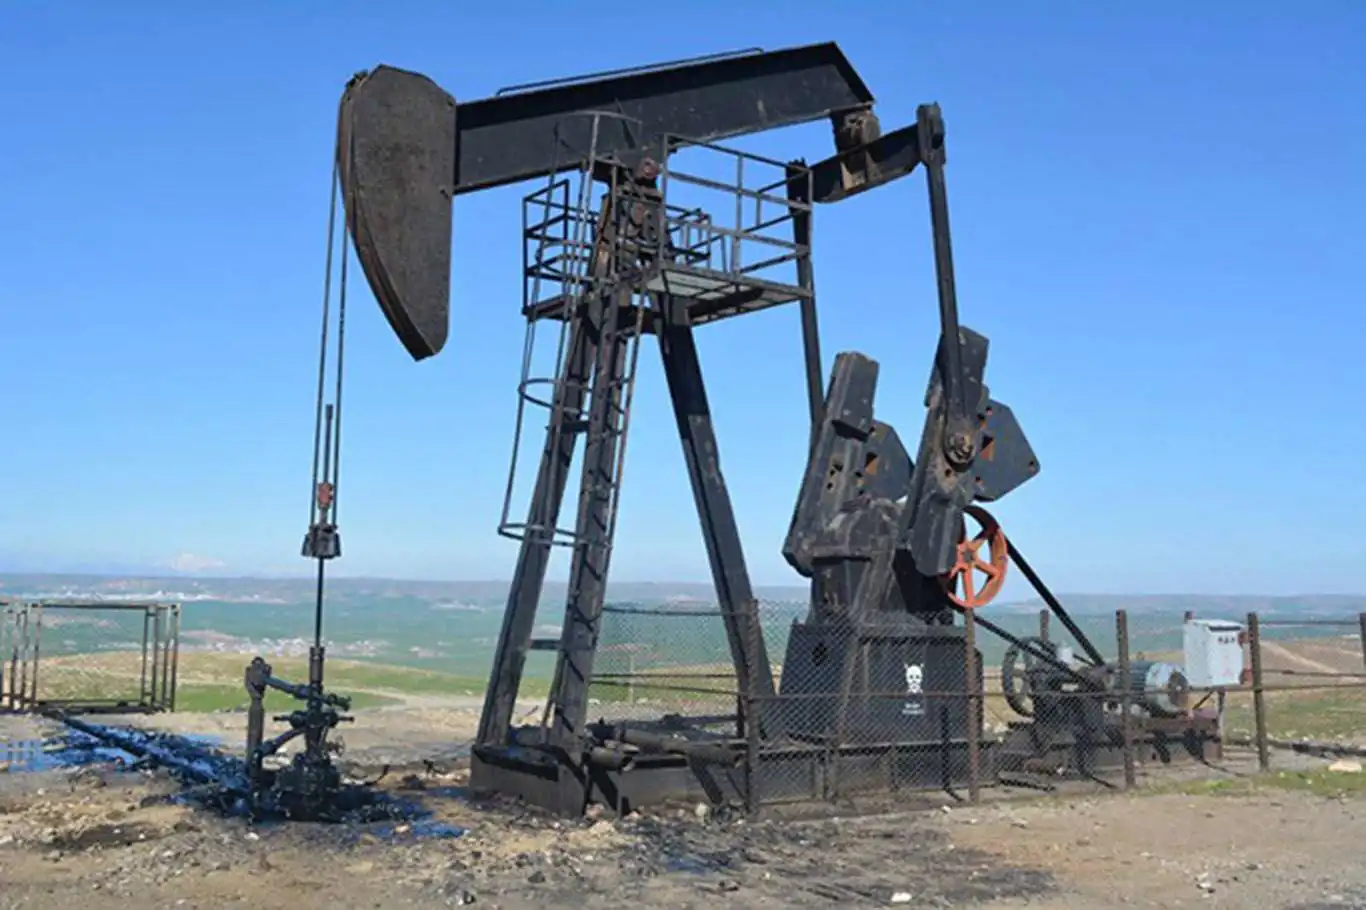 TPAO’nun petrol arama ruhsatı uzatıldı